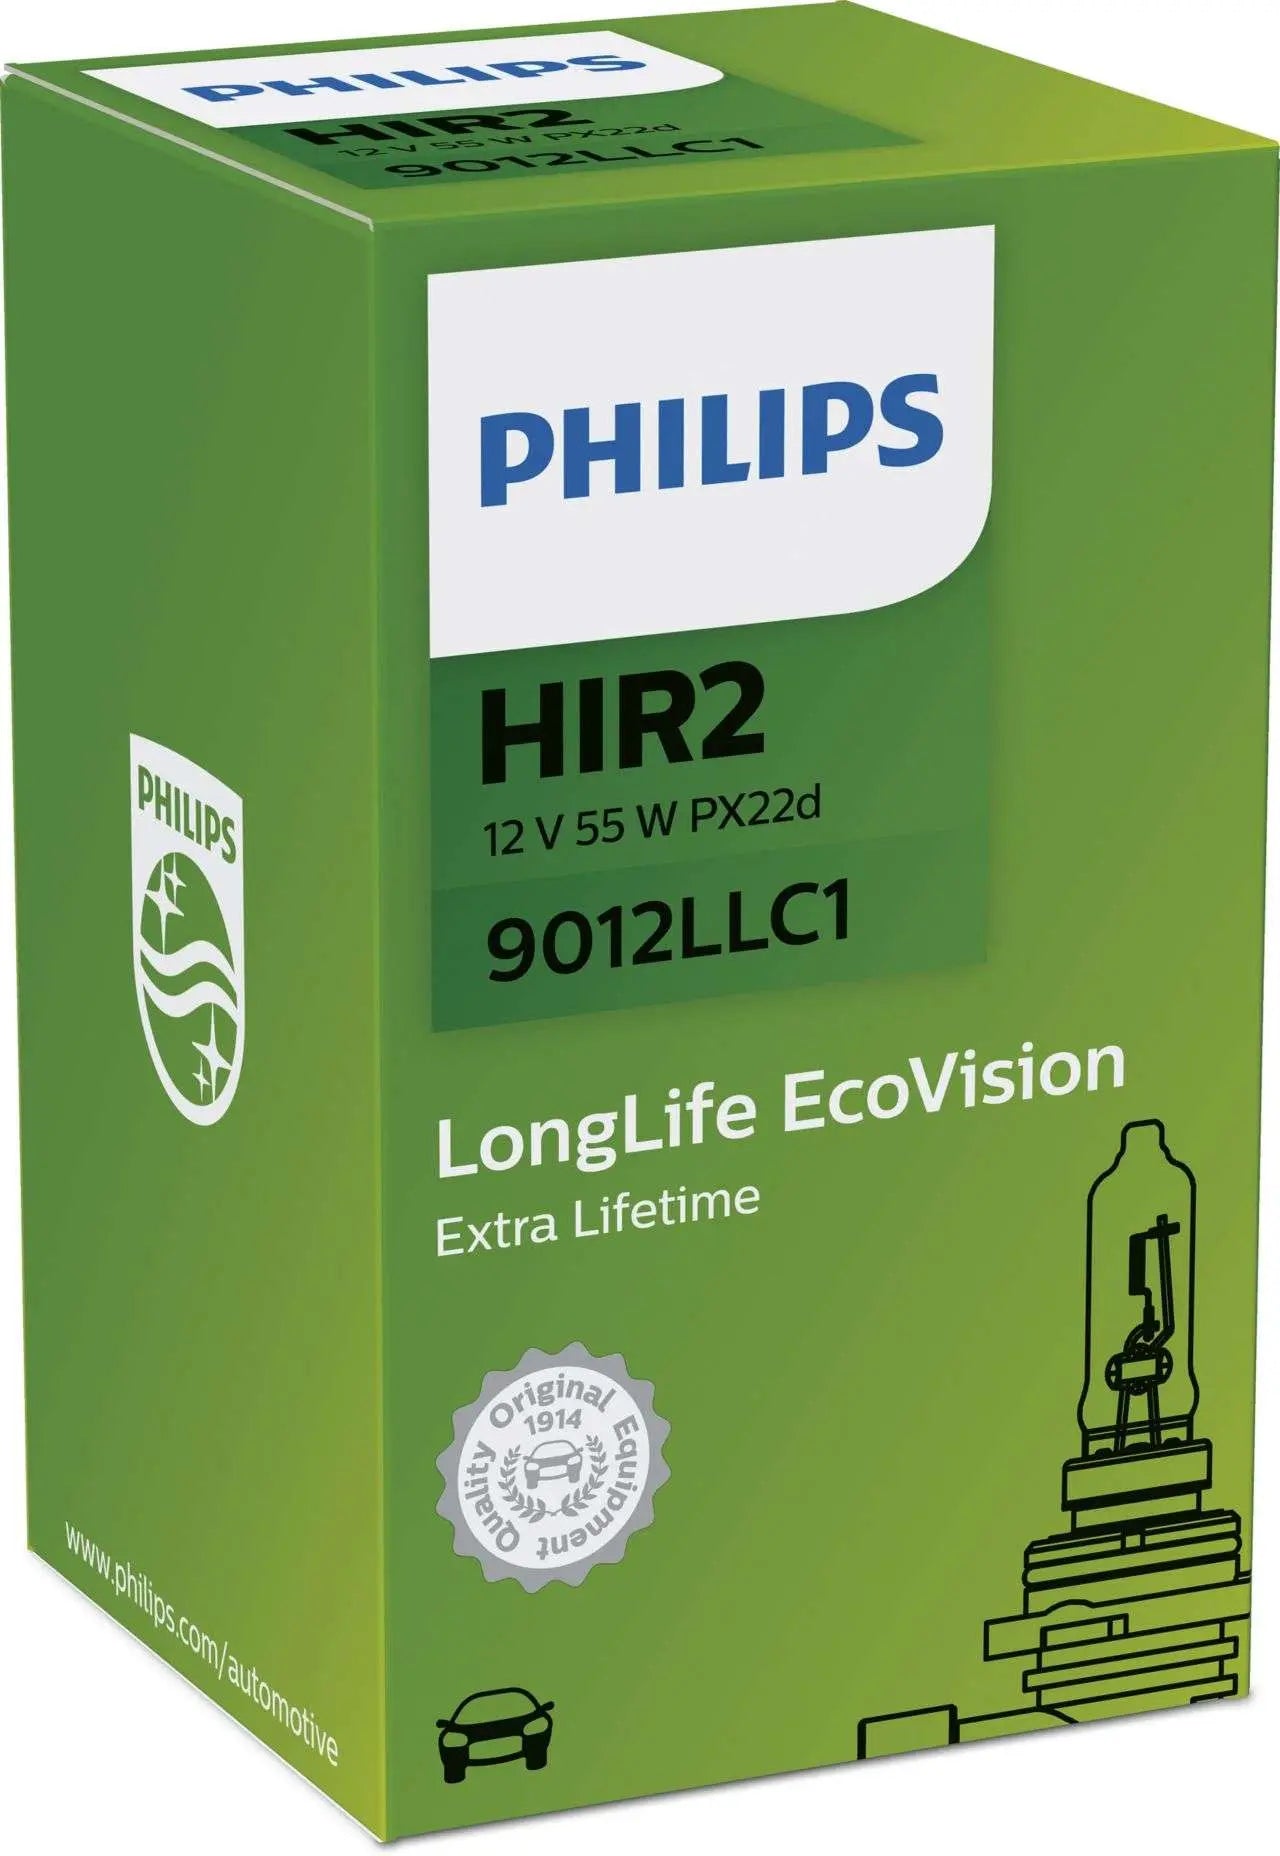 HIR2 12V 55W PX22d LongerLife 3x life time 1 St. Philips - Samsuns Group